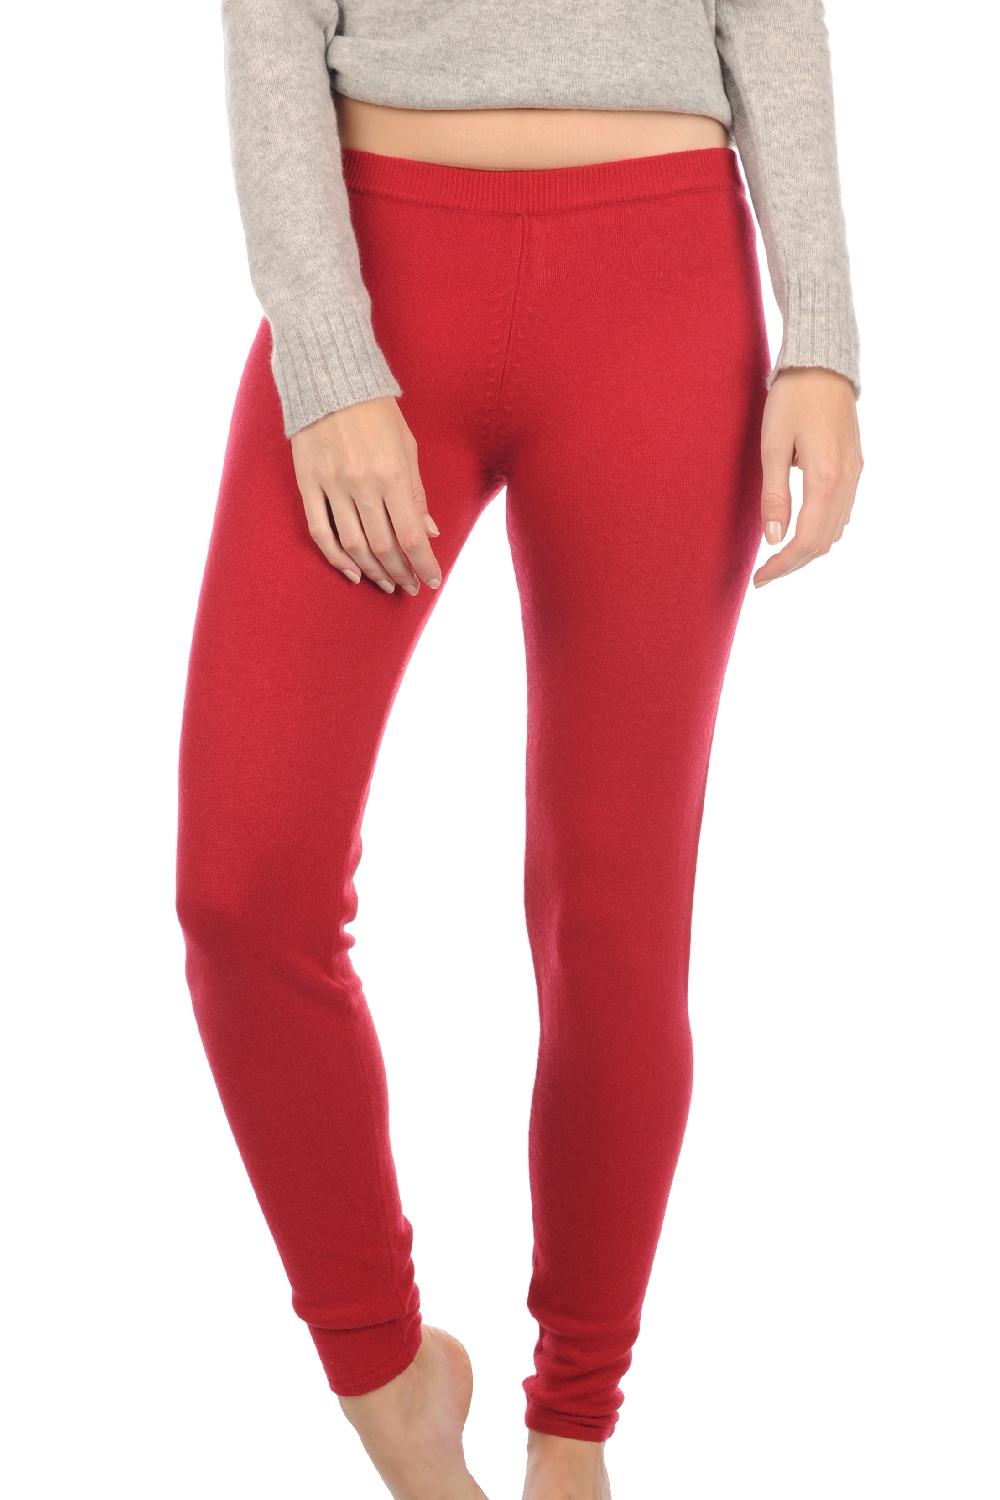 Cashmere cashmere donna pantaloni leggings xelina rosso rubino s